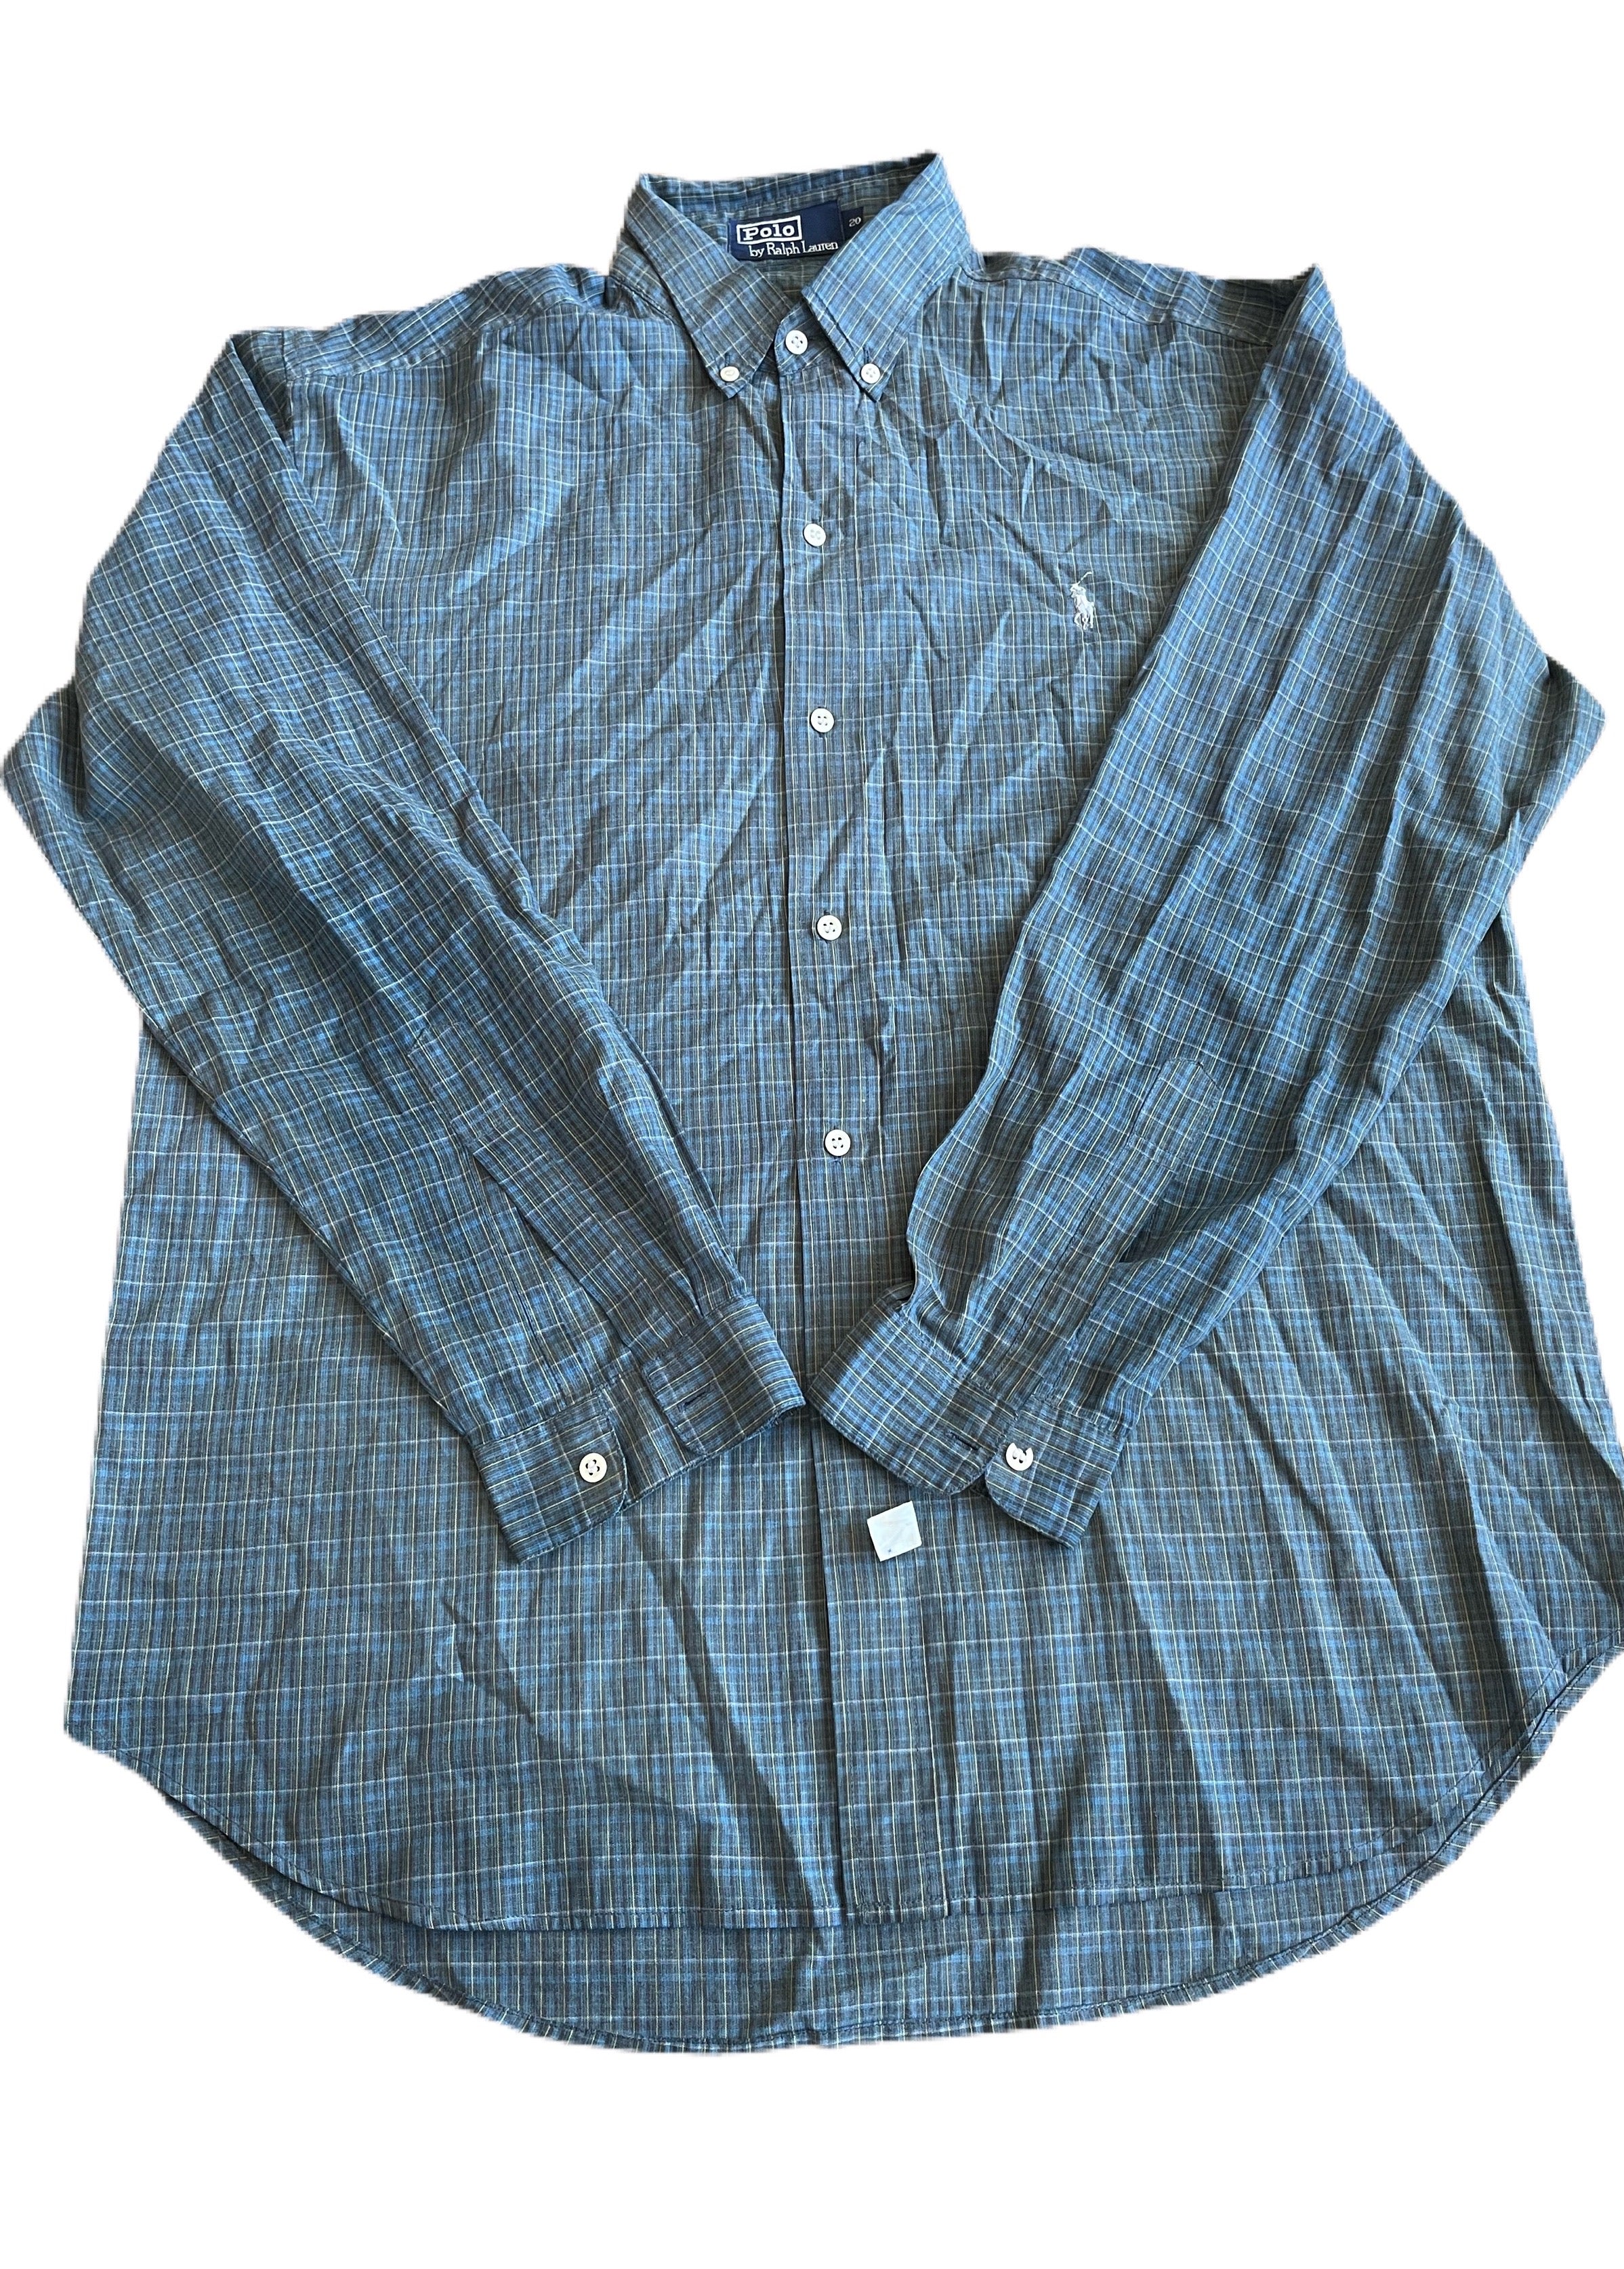 Ralph Lauren Cotton shirts